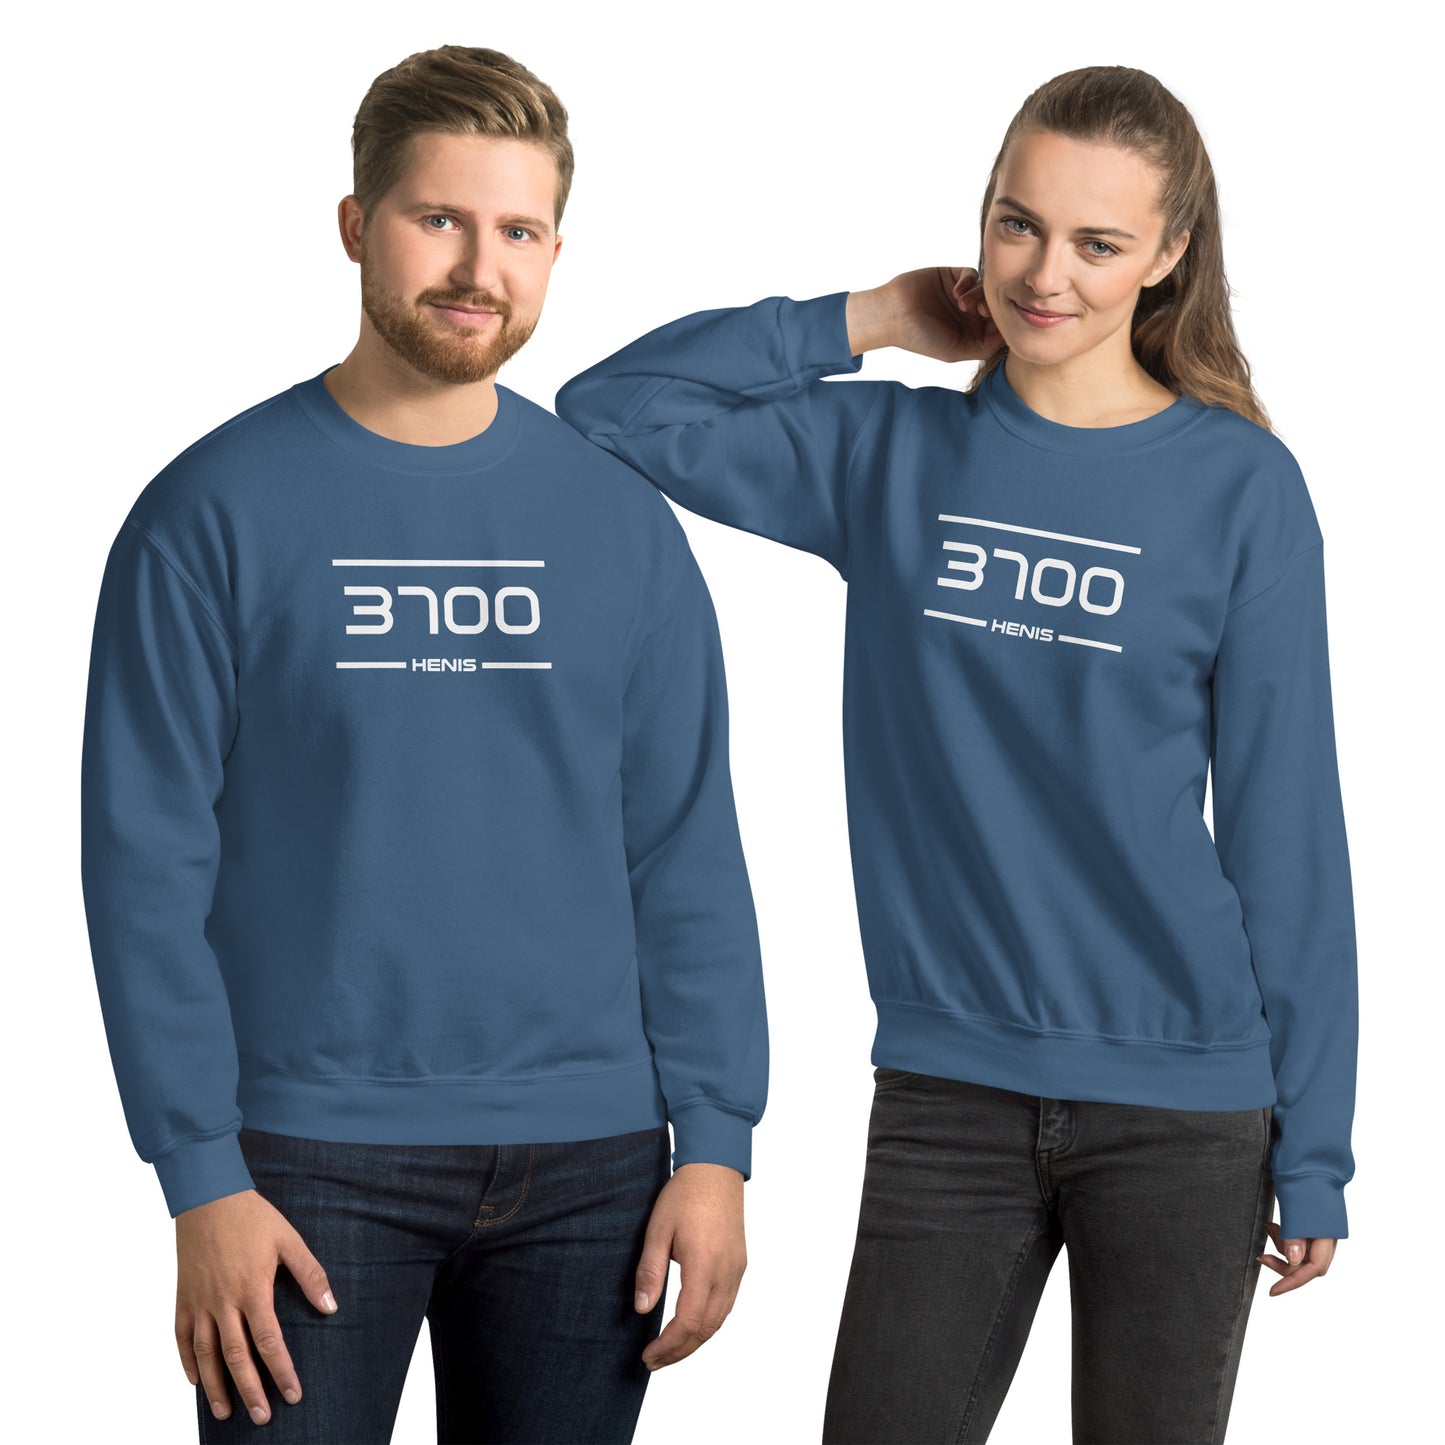 Sweater - 3700 - Henis (M/V)